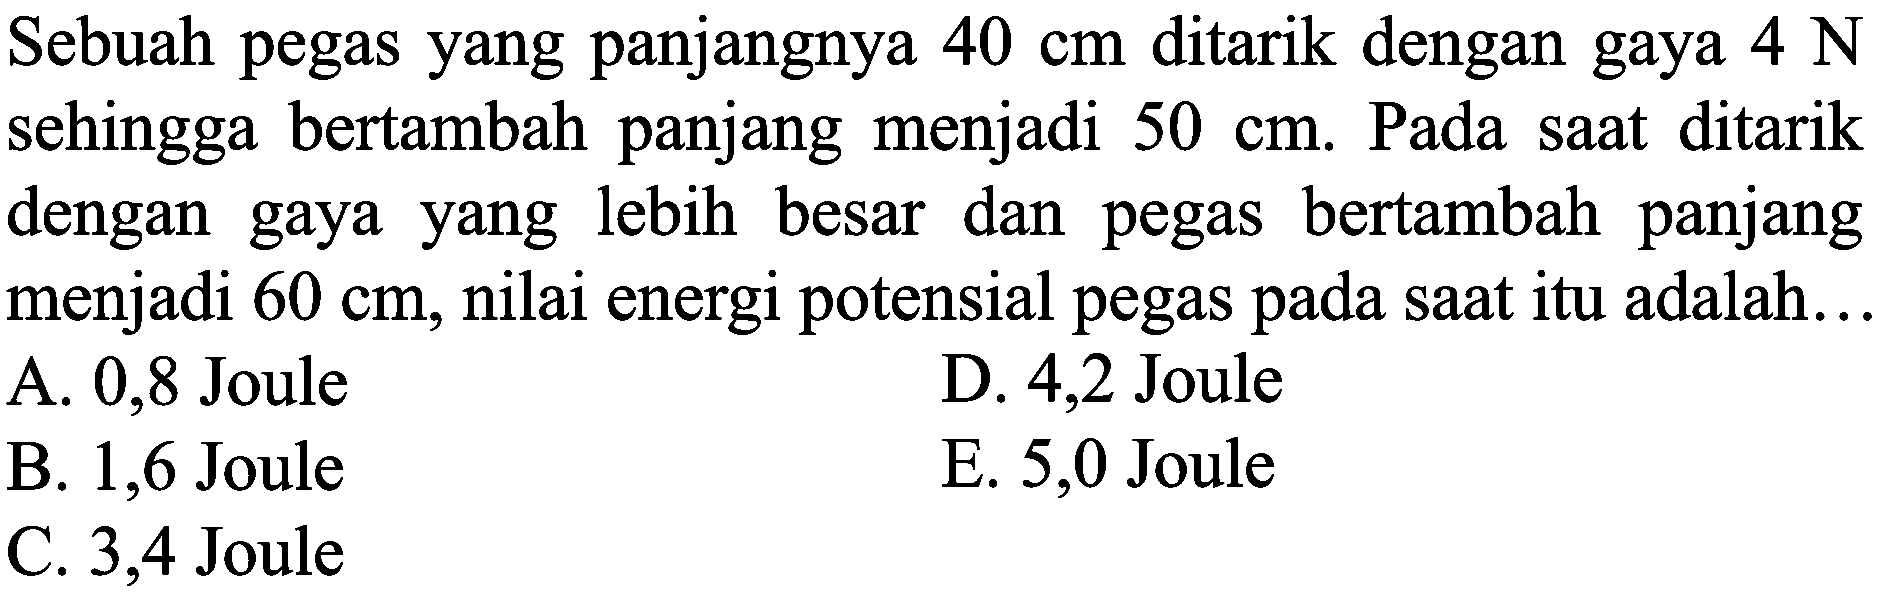 Sebuah pegas yang panjangnya  40 cm  ditarik dengan gaya  4 ~N  sehingga bertambah panjang menjadi  50 cm . Pada saat ditarik dengan gaya yang lebih besar dan pegas bertambah panjang menjadi  60 cm , nilai energi potensial pegas pada saat itu adalah...
A. 0,8 Joule
D. 4,2 Joule
B. 1,6 Joule
E. 5,0 Joule
C. 3,4 Joule